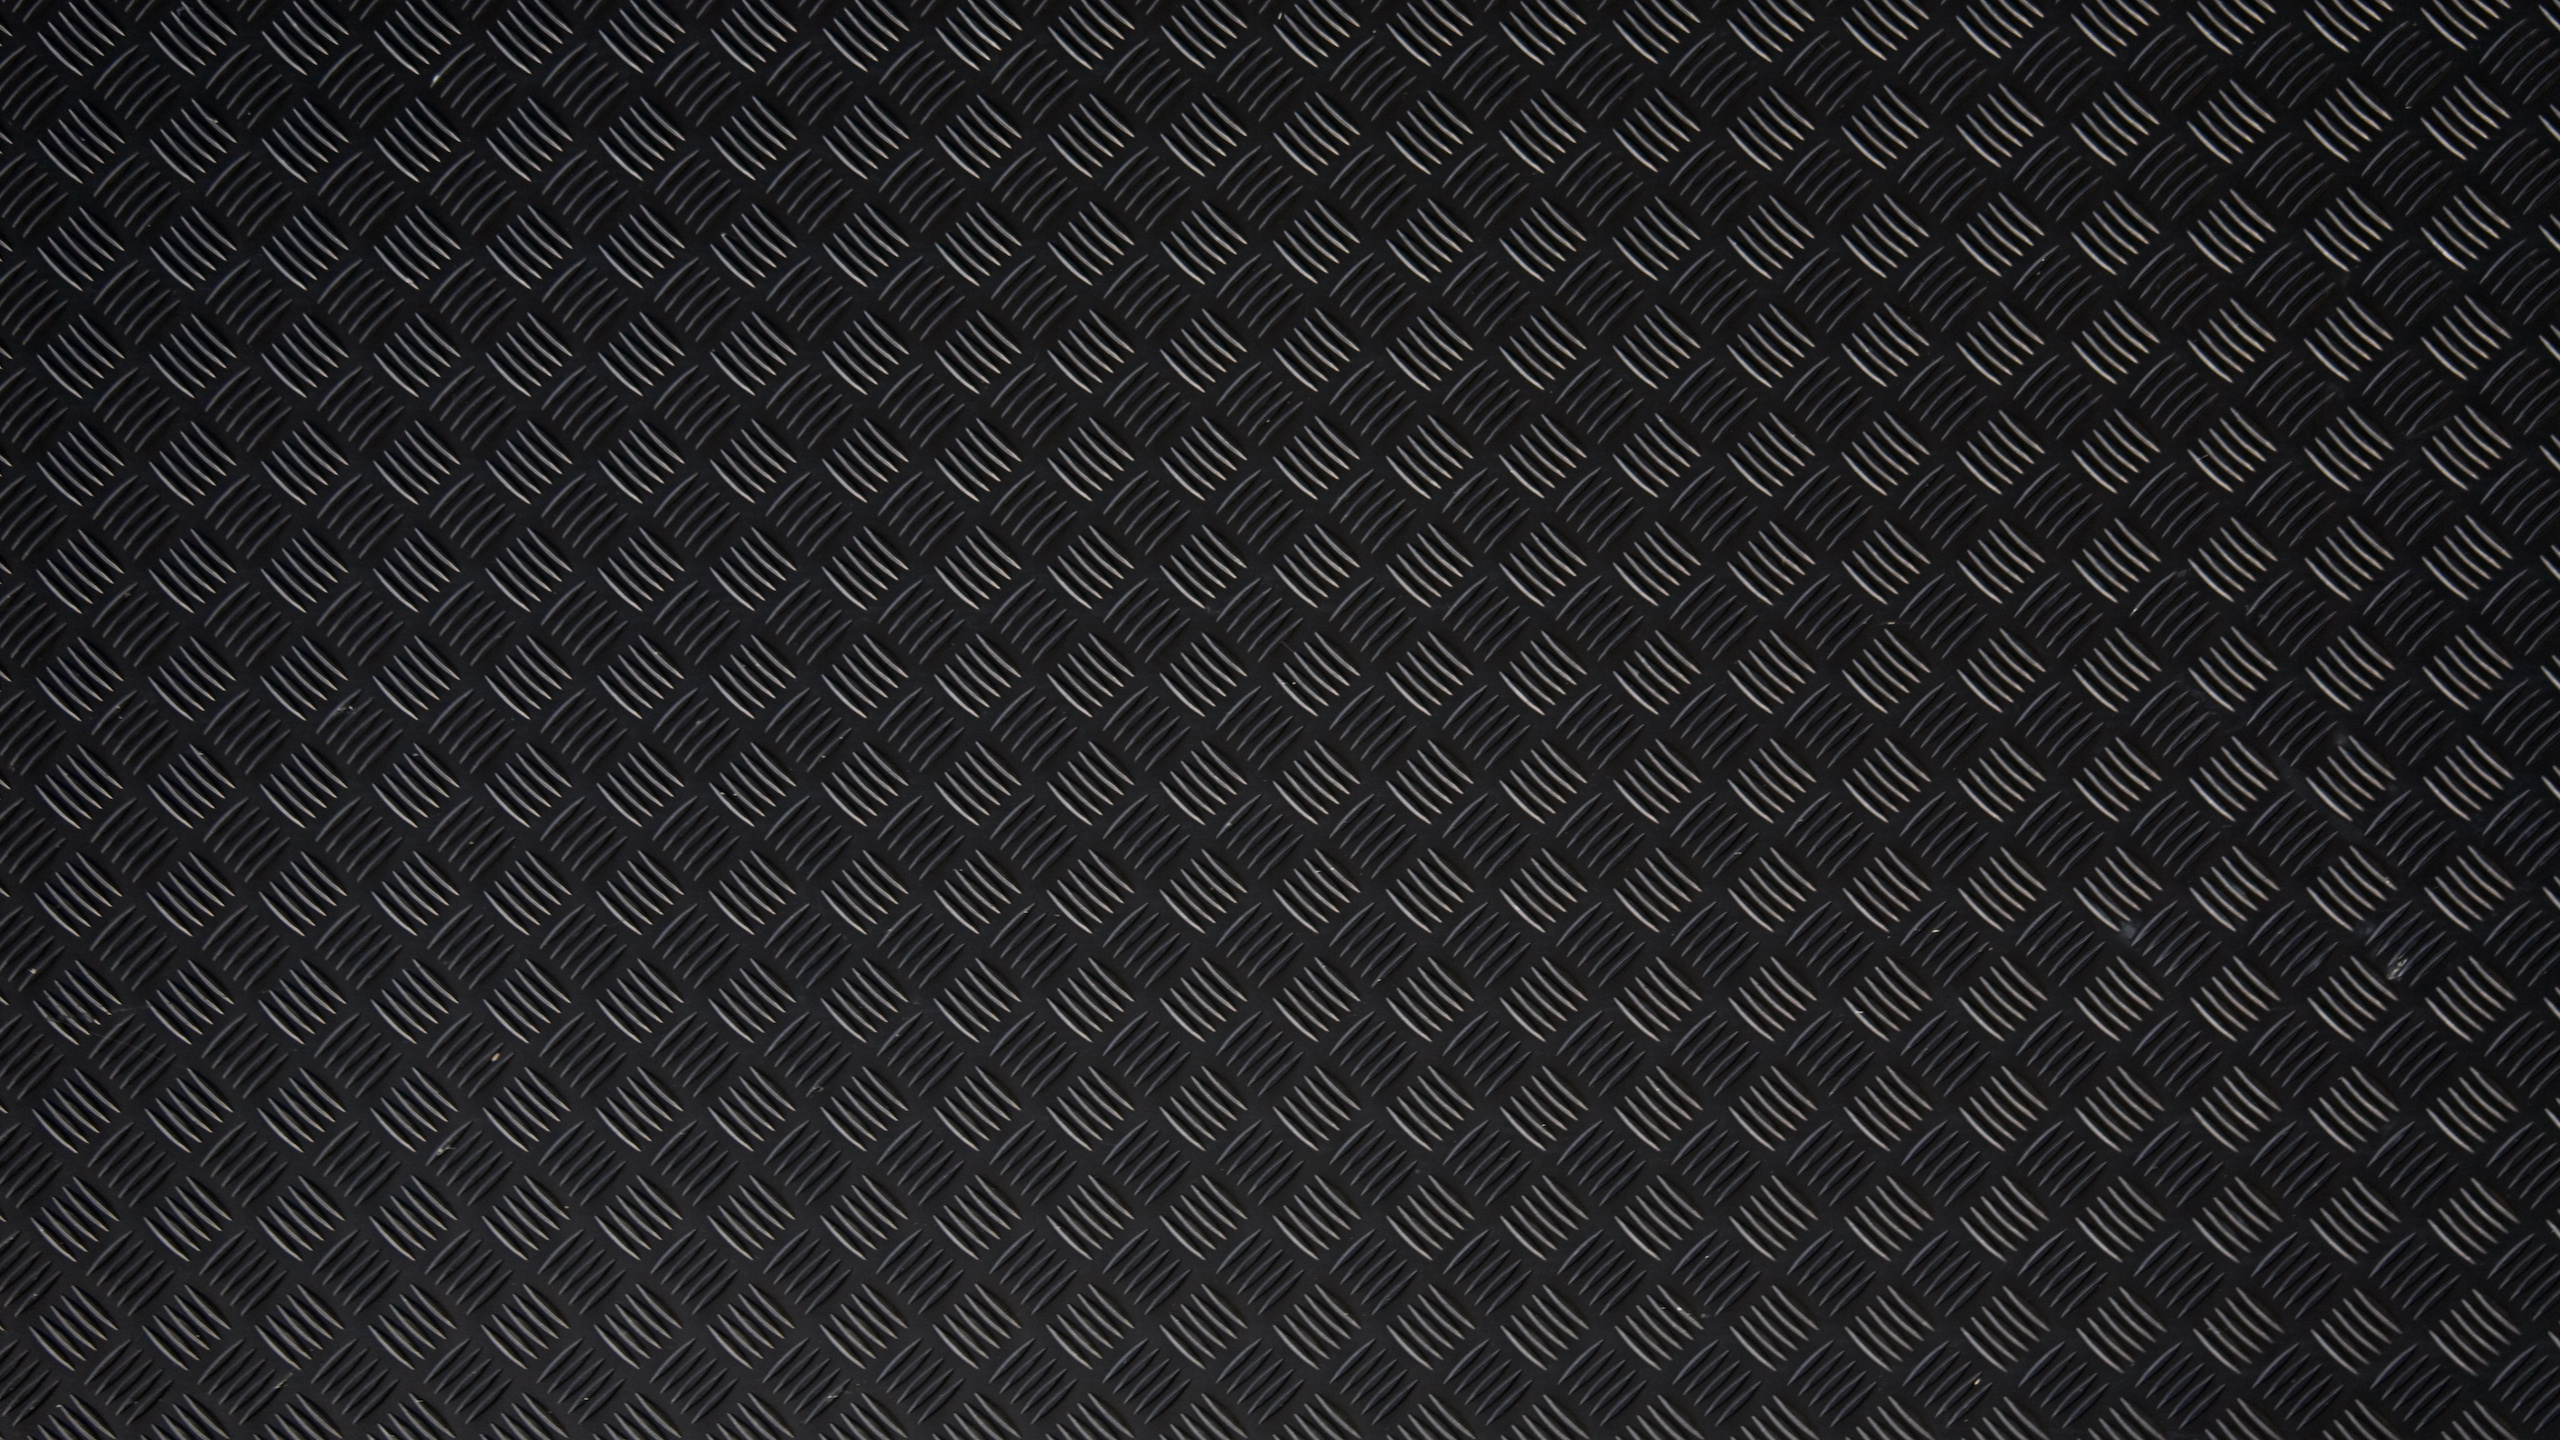 Blau-weiß Kariertes Textil. Wallpaper in 2560x1440 Resolution